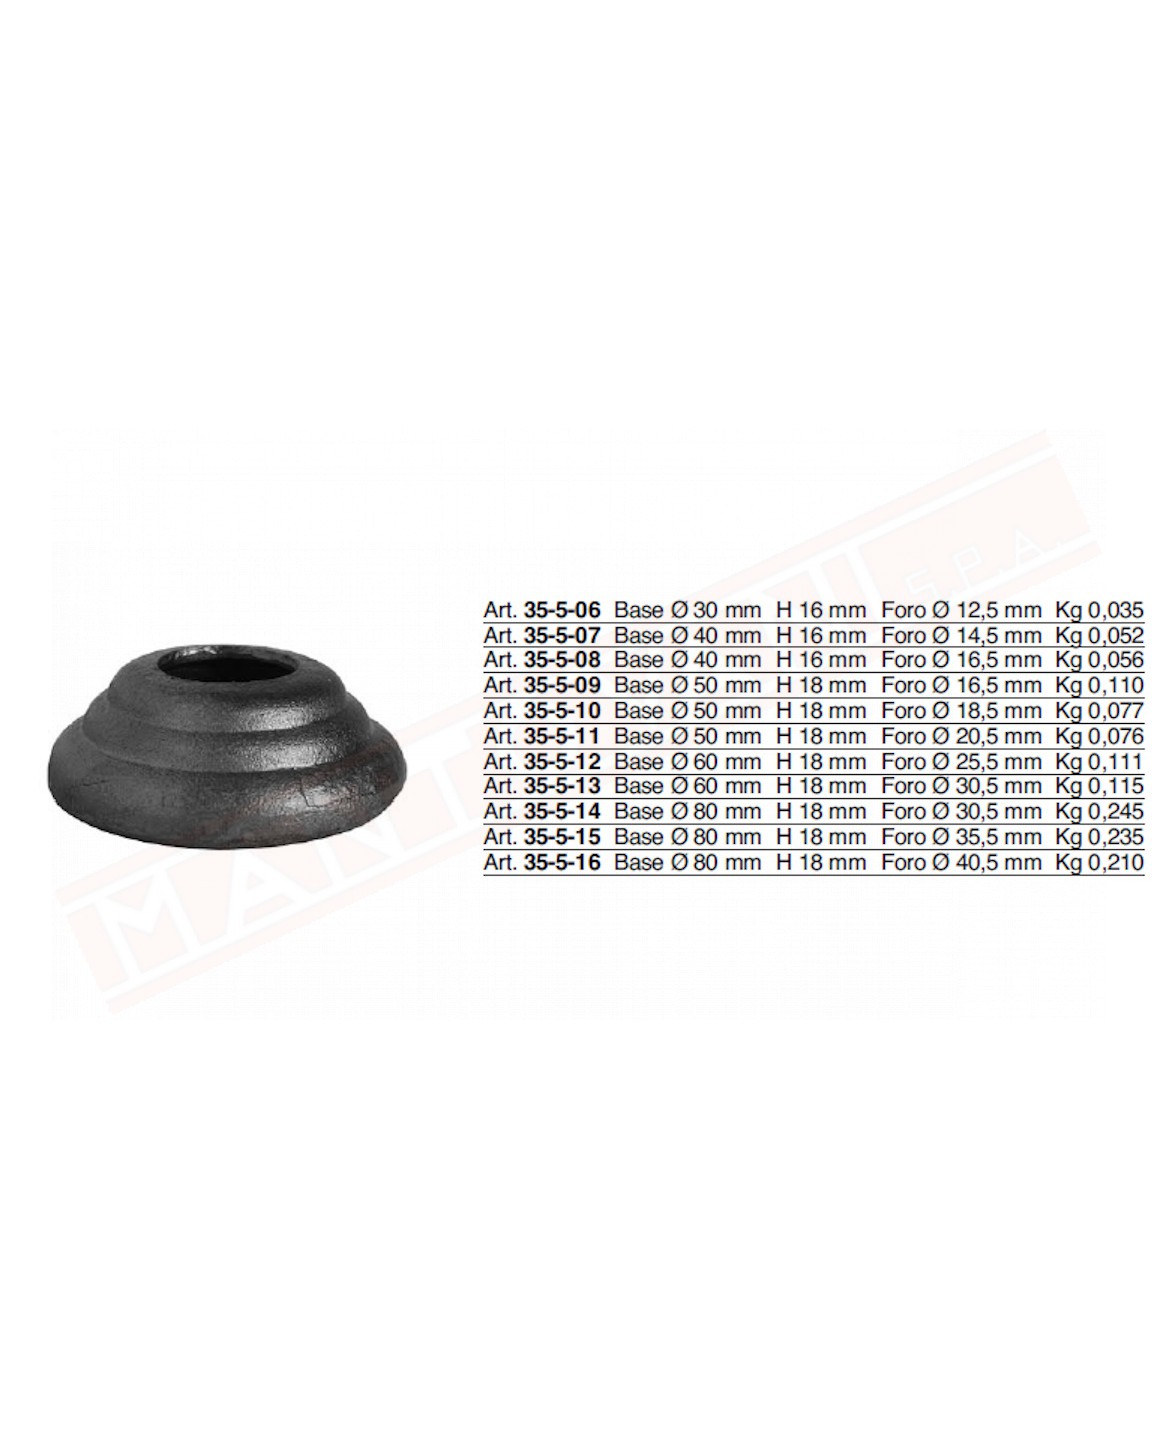 Borchia in ferro forata per tondo da 20 mm foro 20.5 mm diametro esterno 50 mm h 18 mm